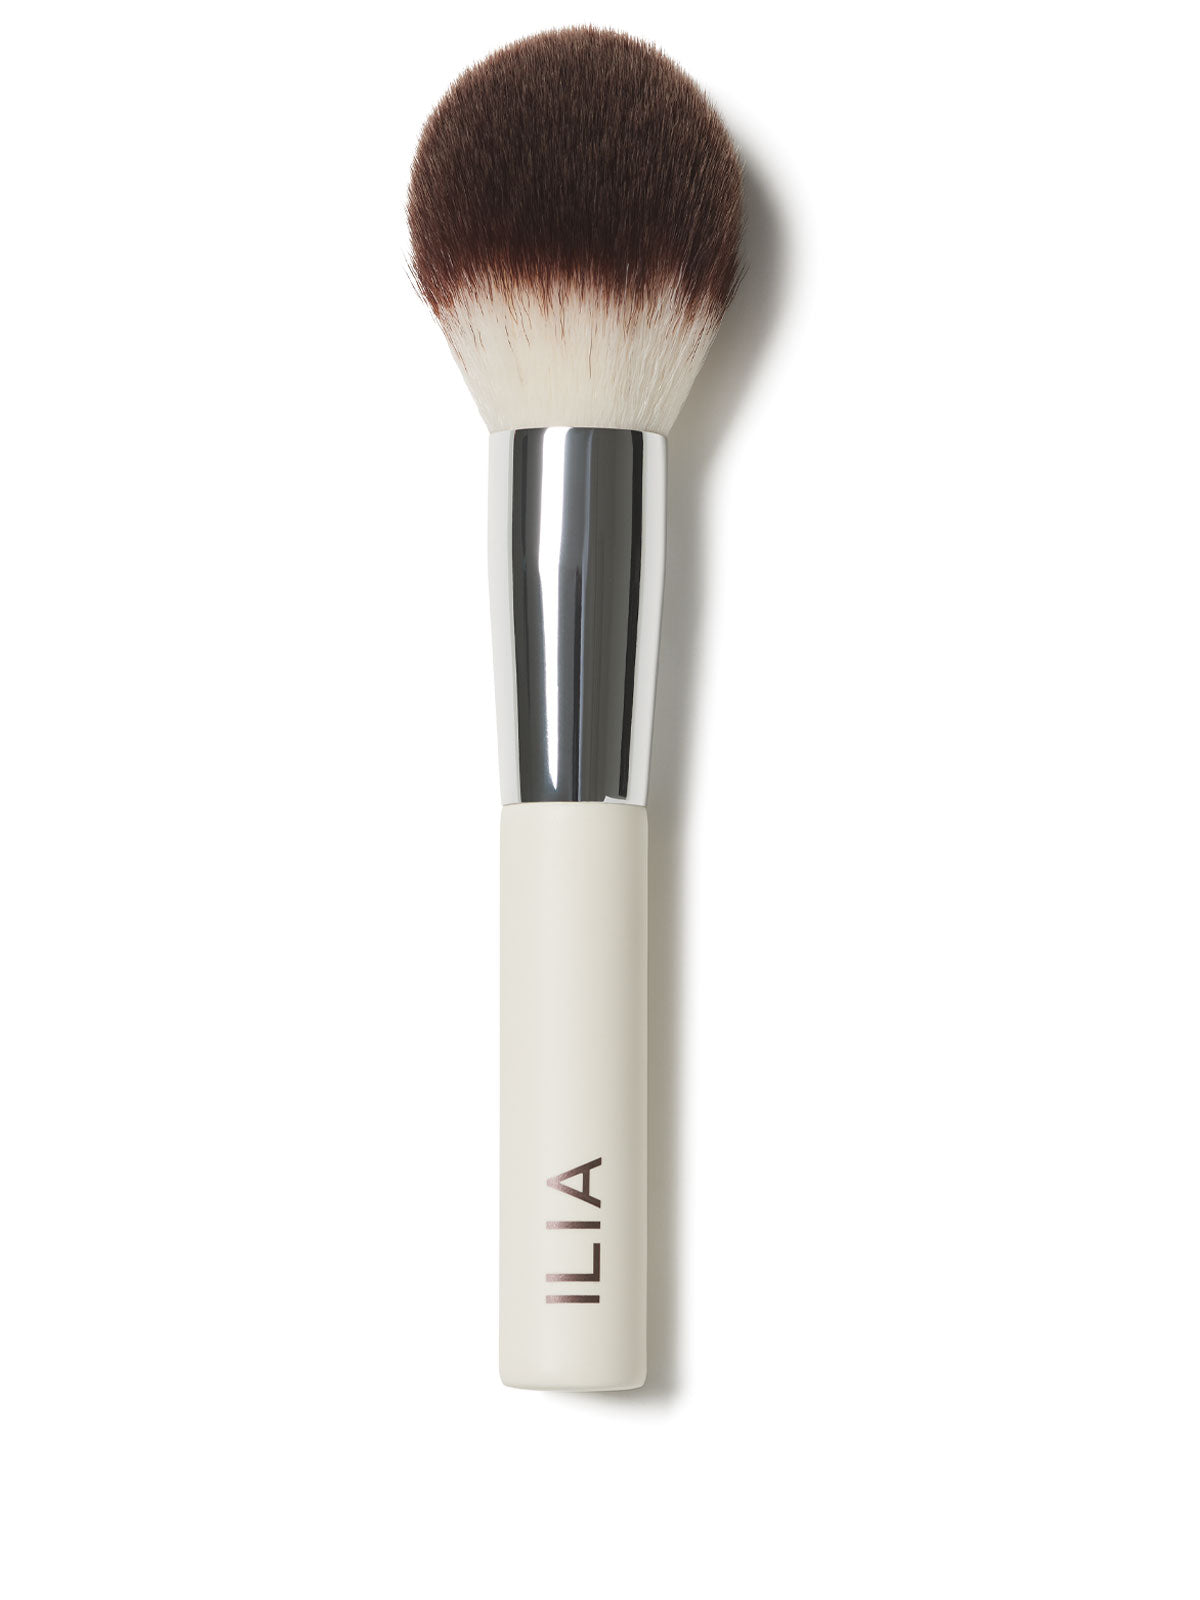 ILIA Brush - Perfecting Buff